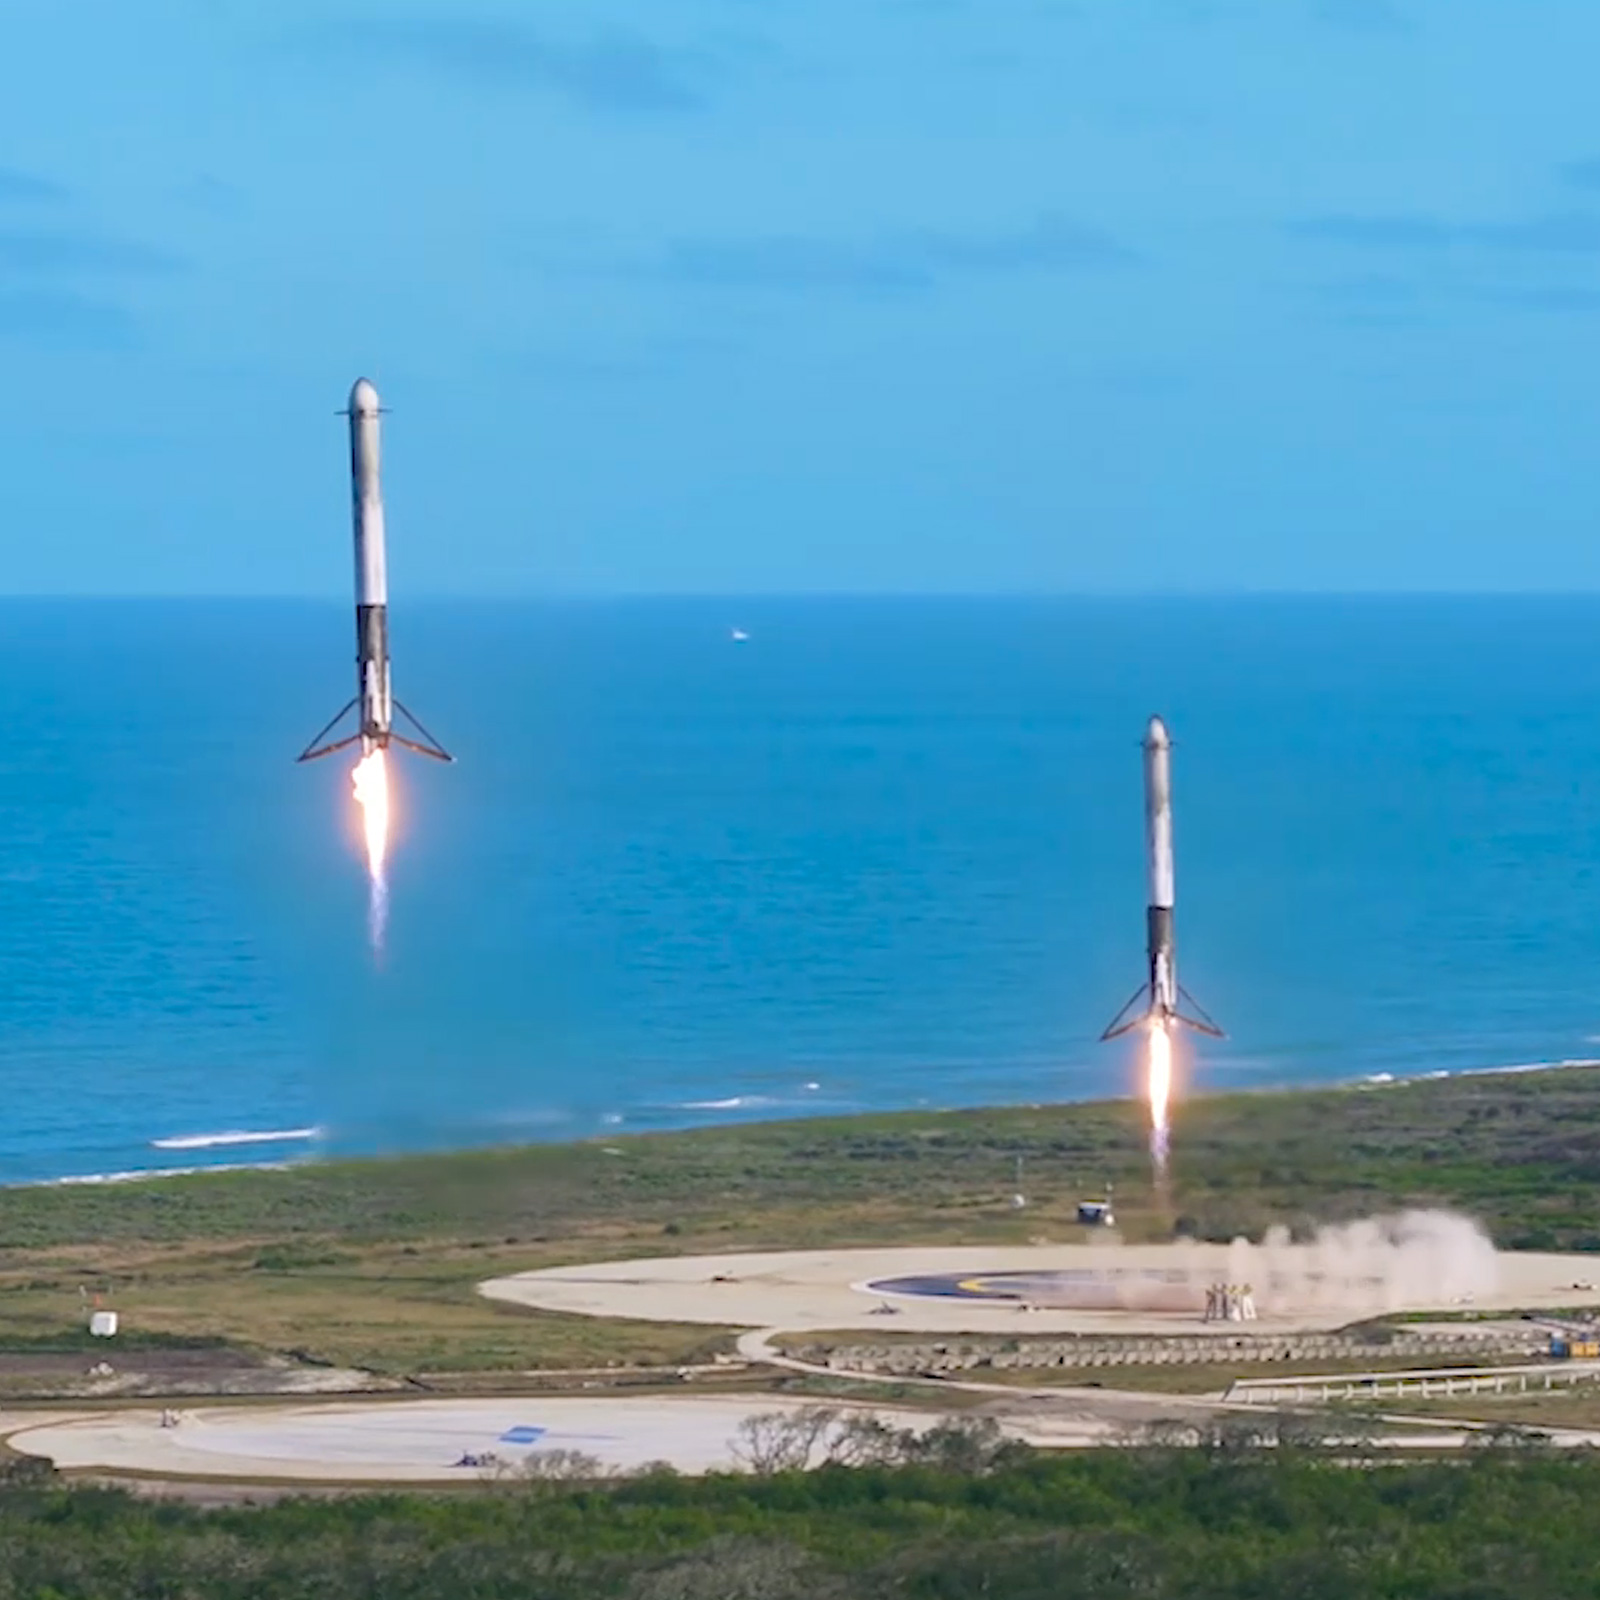 SpaceX - Mission: nhiệm vụ SpaceX Những nhiệm vụ của SpaceX luôn mang lại nhiều điều đáng kinh ngạc. Các tên lửa của họ được thiết kế để tái sử dụng và giảm thiểu chi phí. Họ đang mở ra chương trình tàu vũ trụ mới và đưa con người đến gần hơn với những điều kỳ diệu. Hãy cùng theo dõi những điều thú vị mà SpaceX đang làm. 